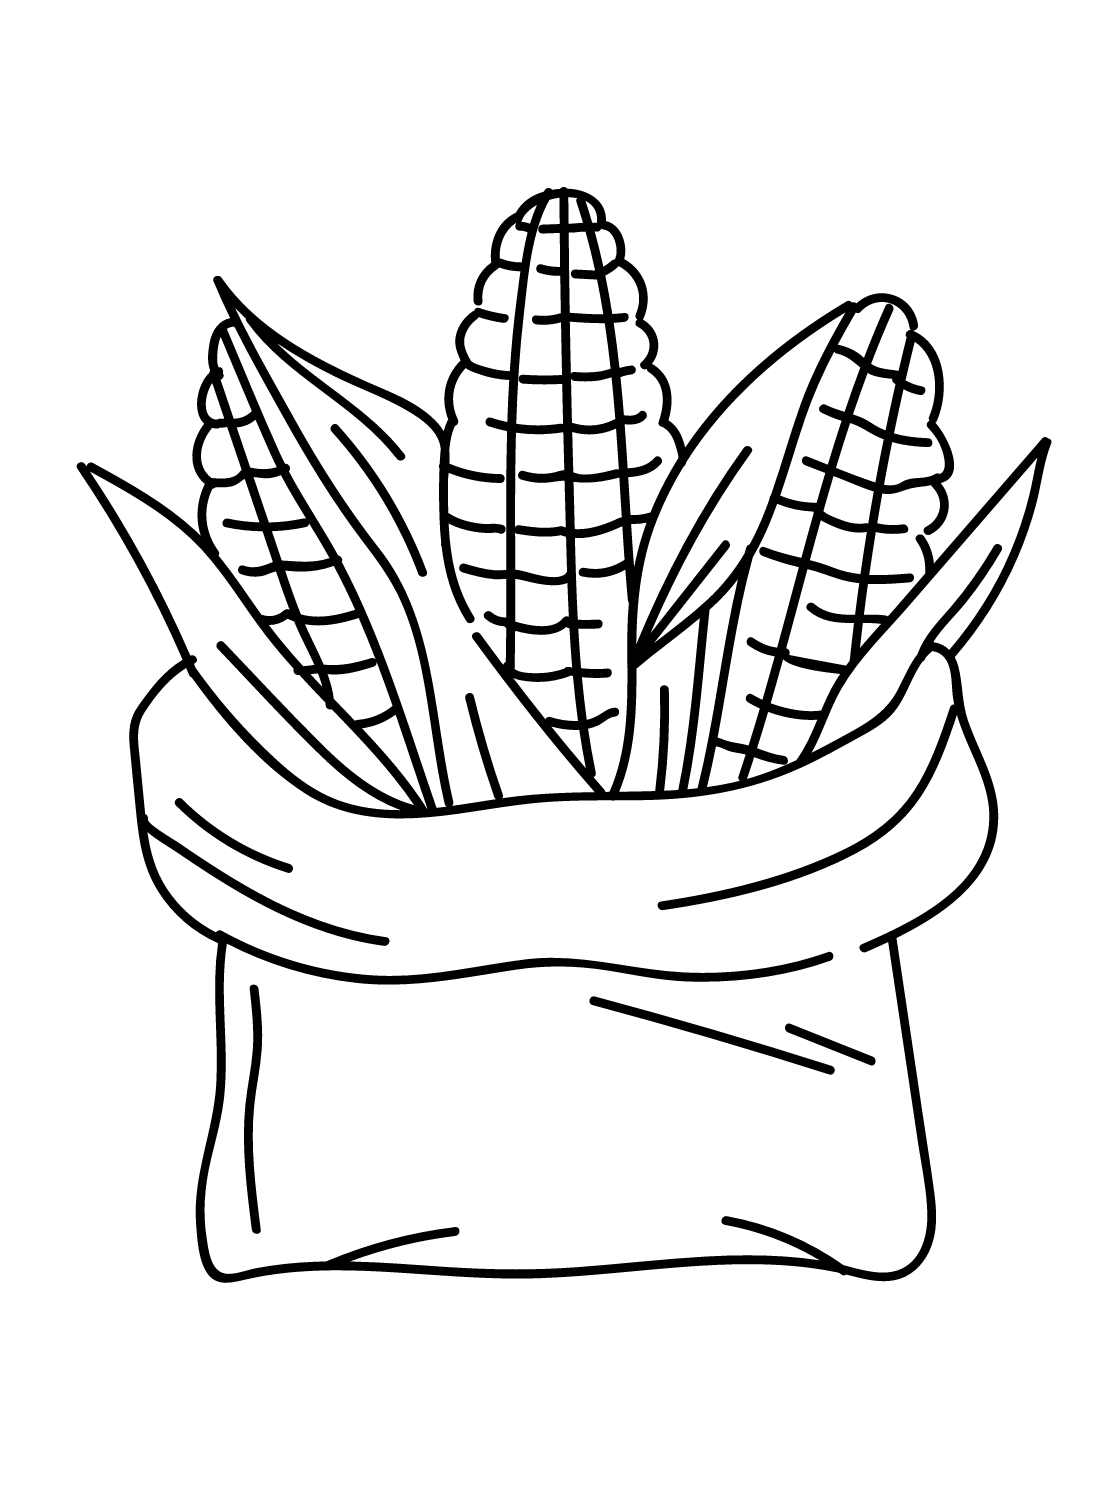 Кукурузный мешок из кукурузы